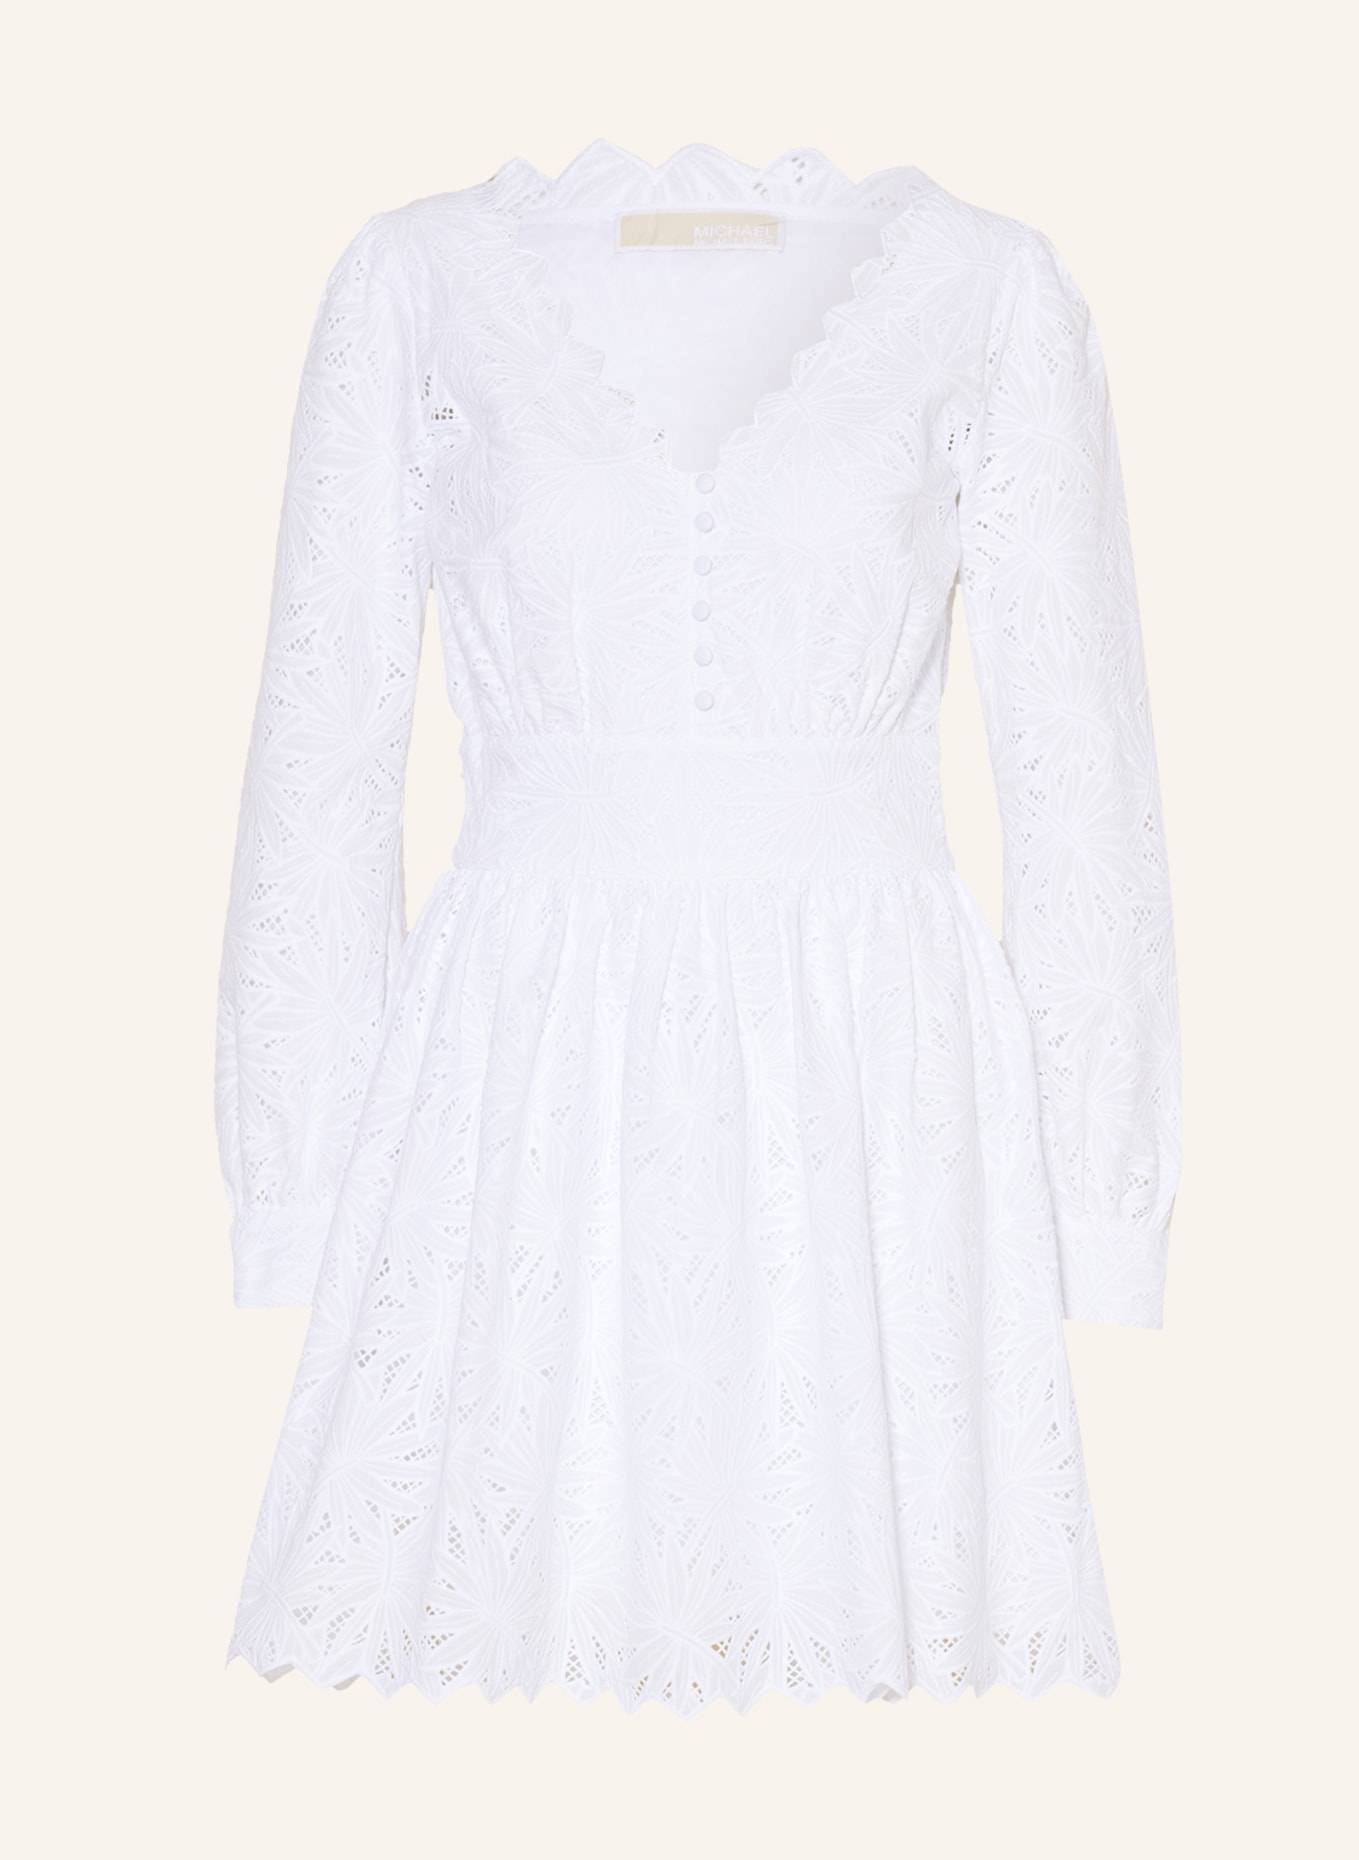 MICHAEL KORS COLLECTION Cottonblend corded lace midi dress  NETAPORTER